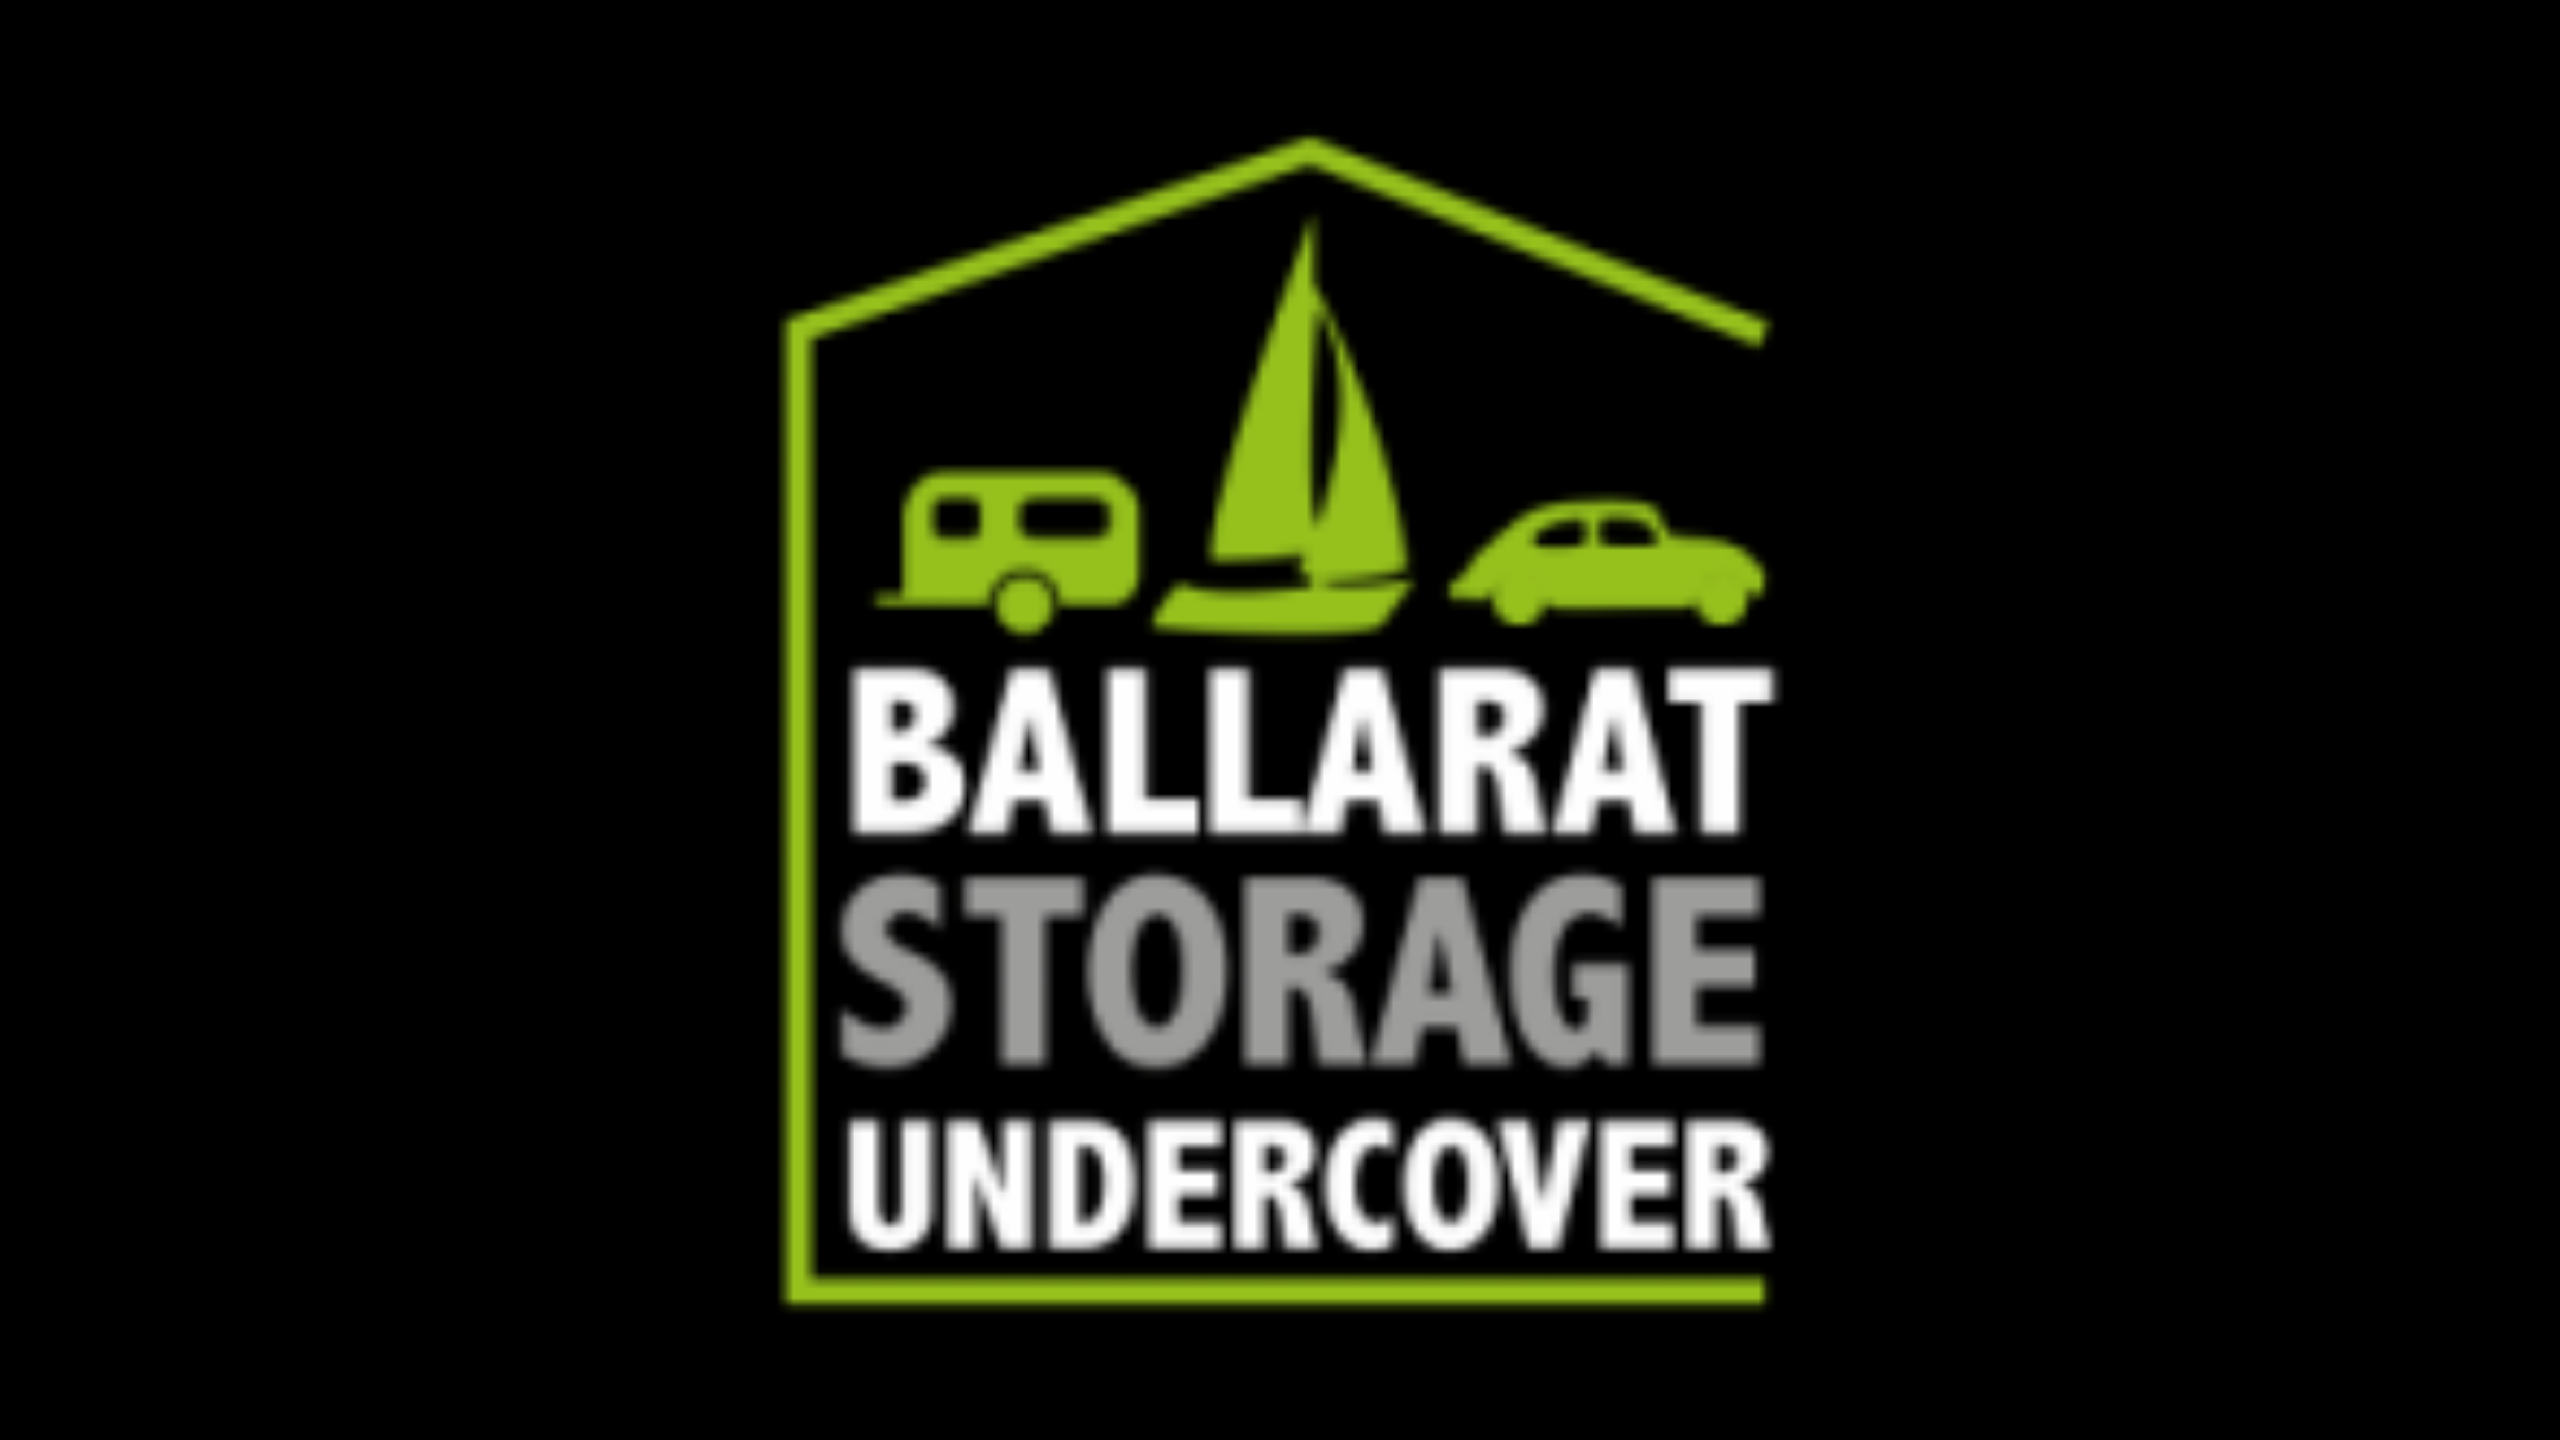 Ballarat Storage Undercover (Screen)